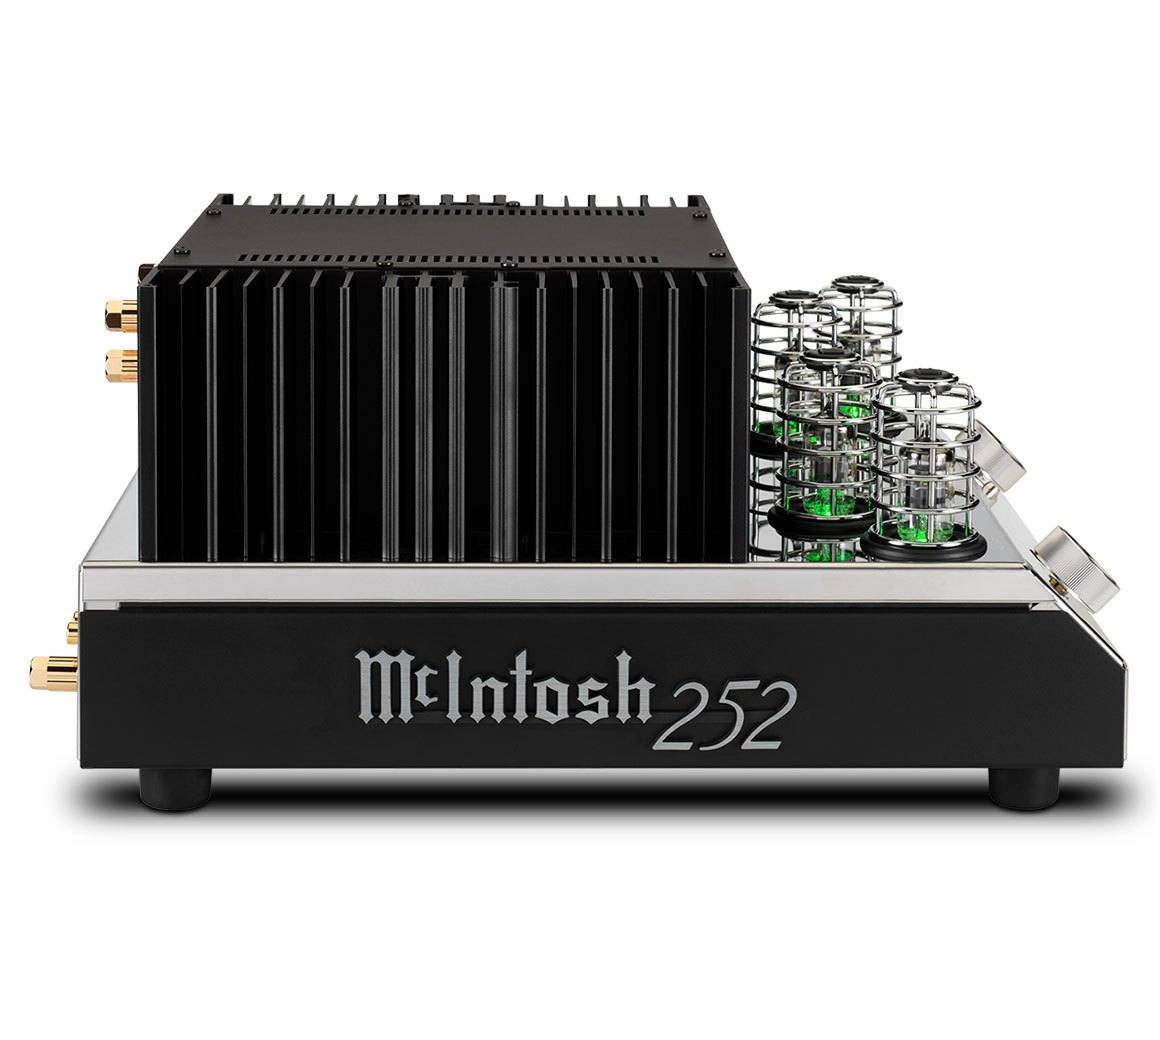 Välljud med nya integrerade McIntosh MA 252